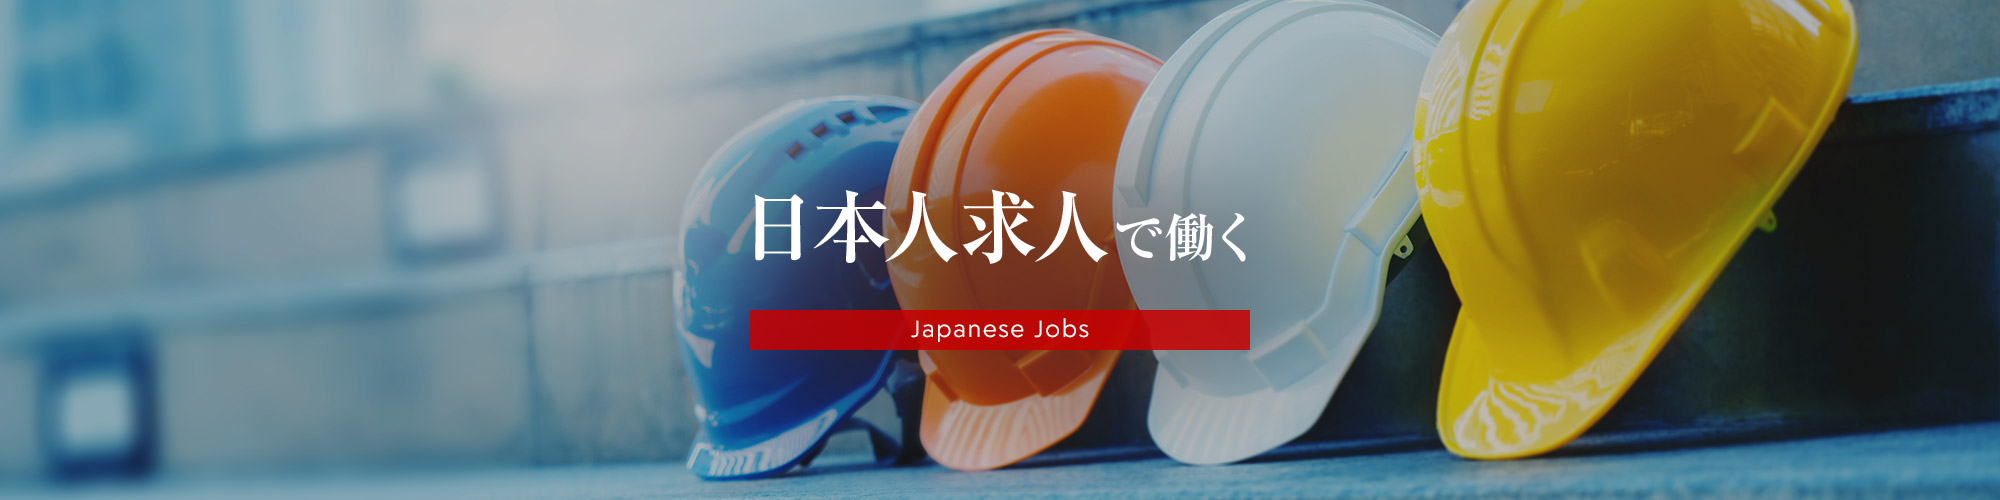 日本人求人で働く